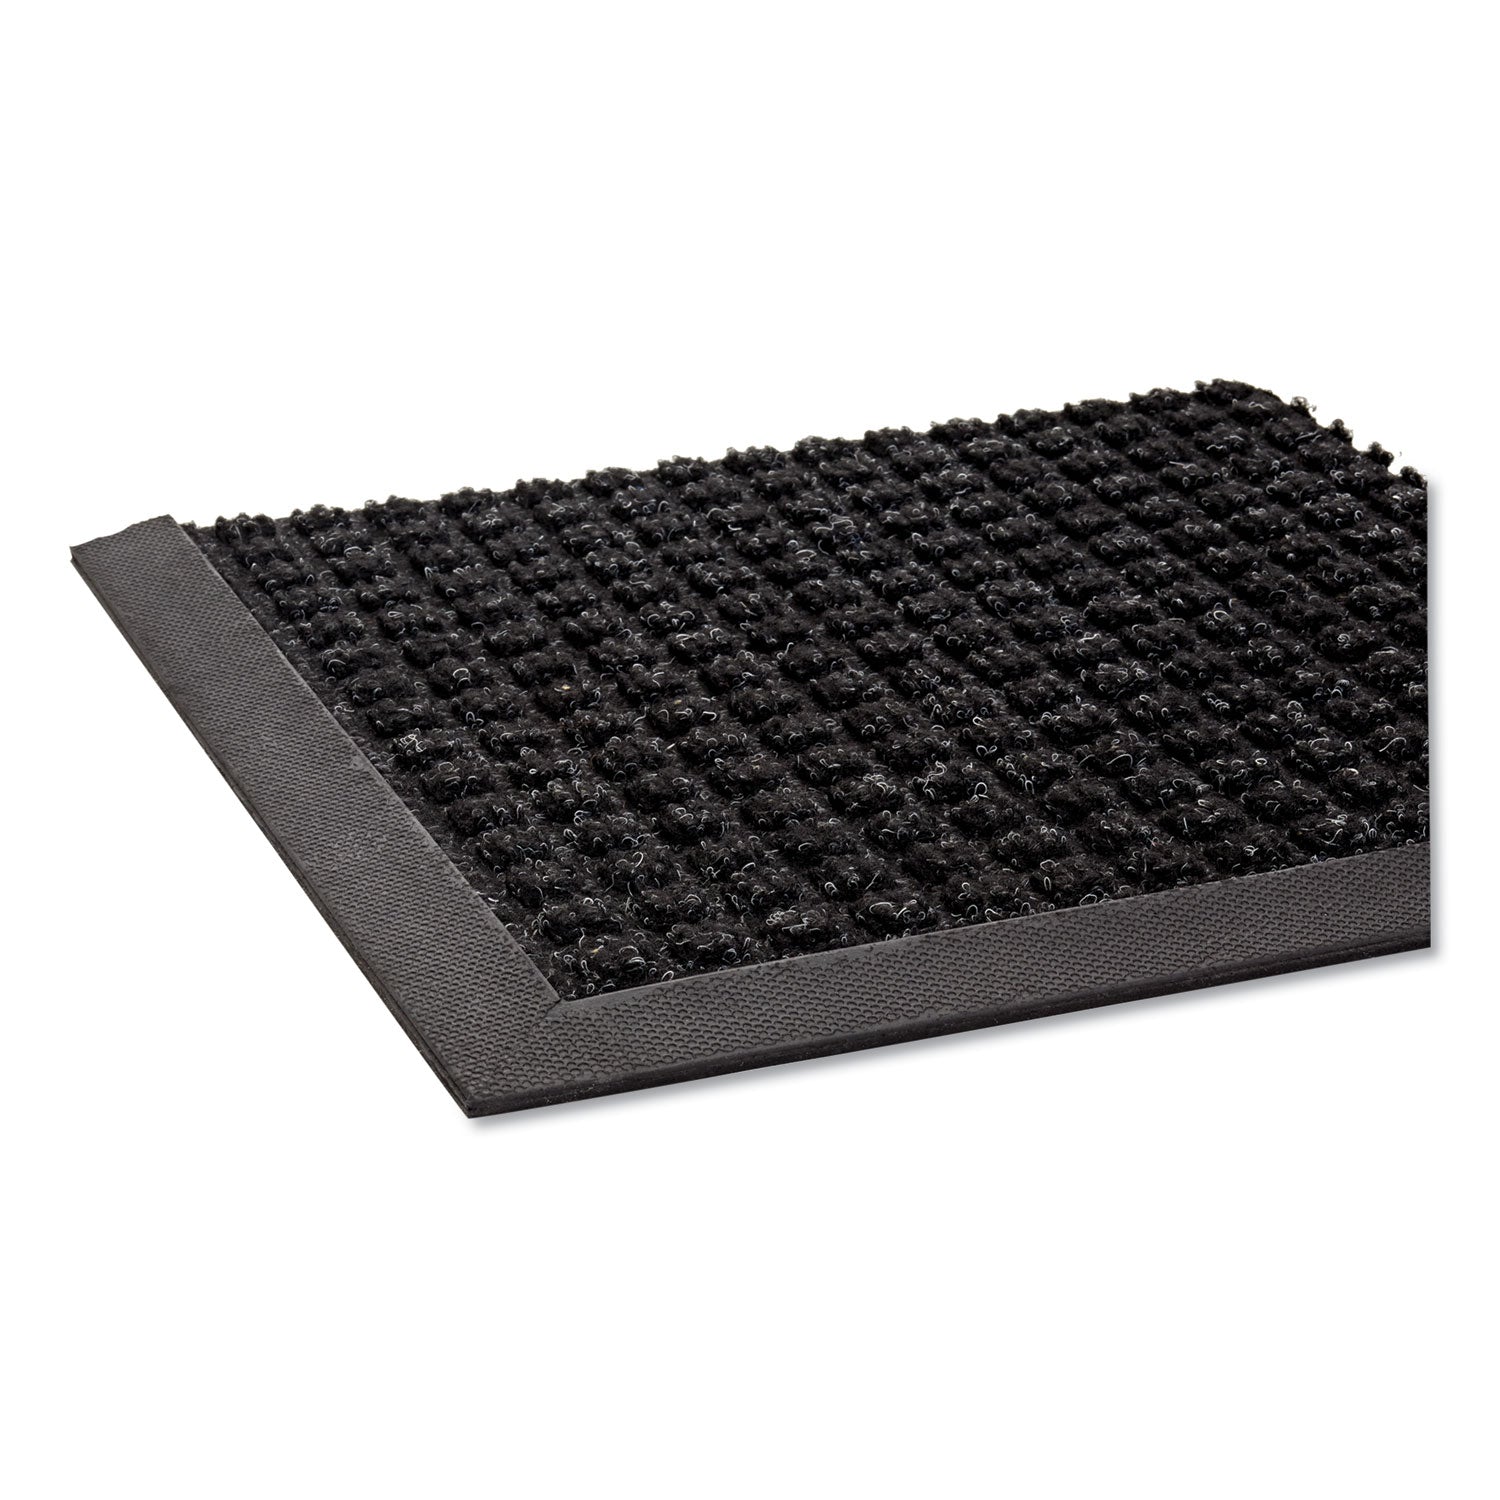 Super-Soaker Wiper Mat with Gripper Bottom, Polypropylene, 36 x 120, Charcoal - 